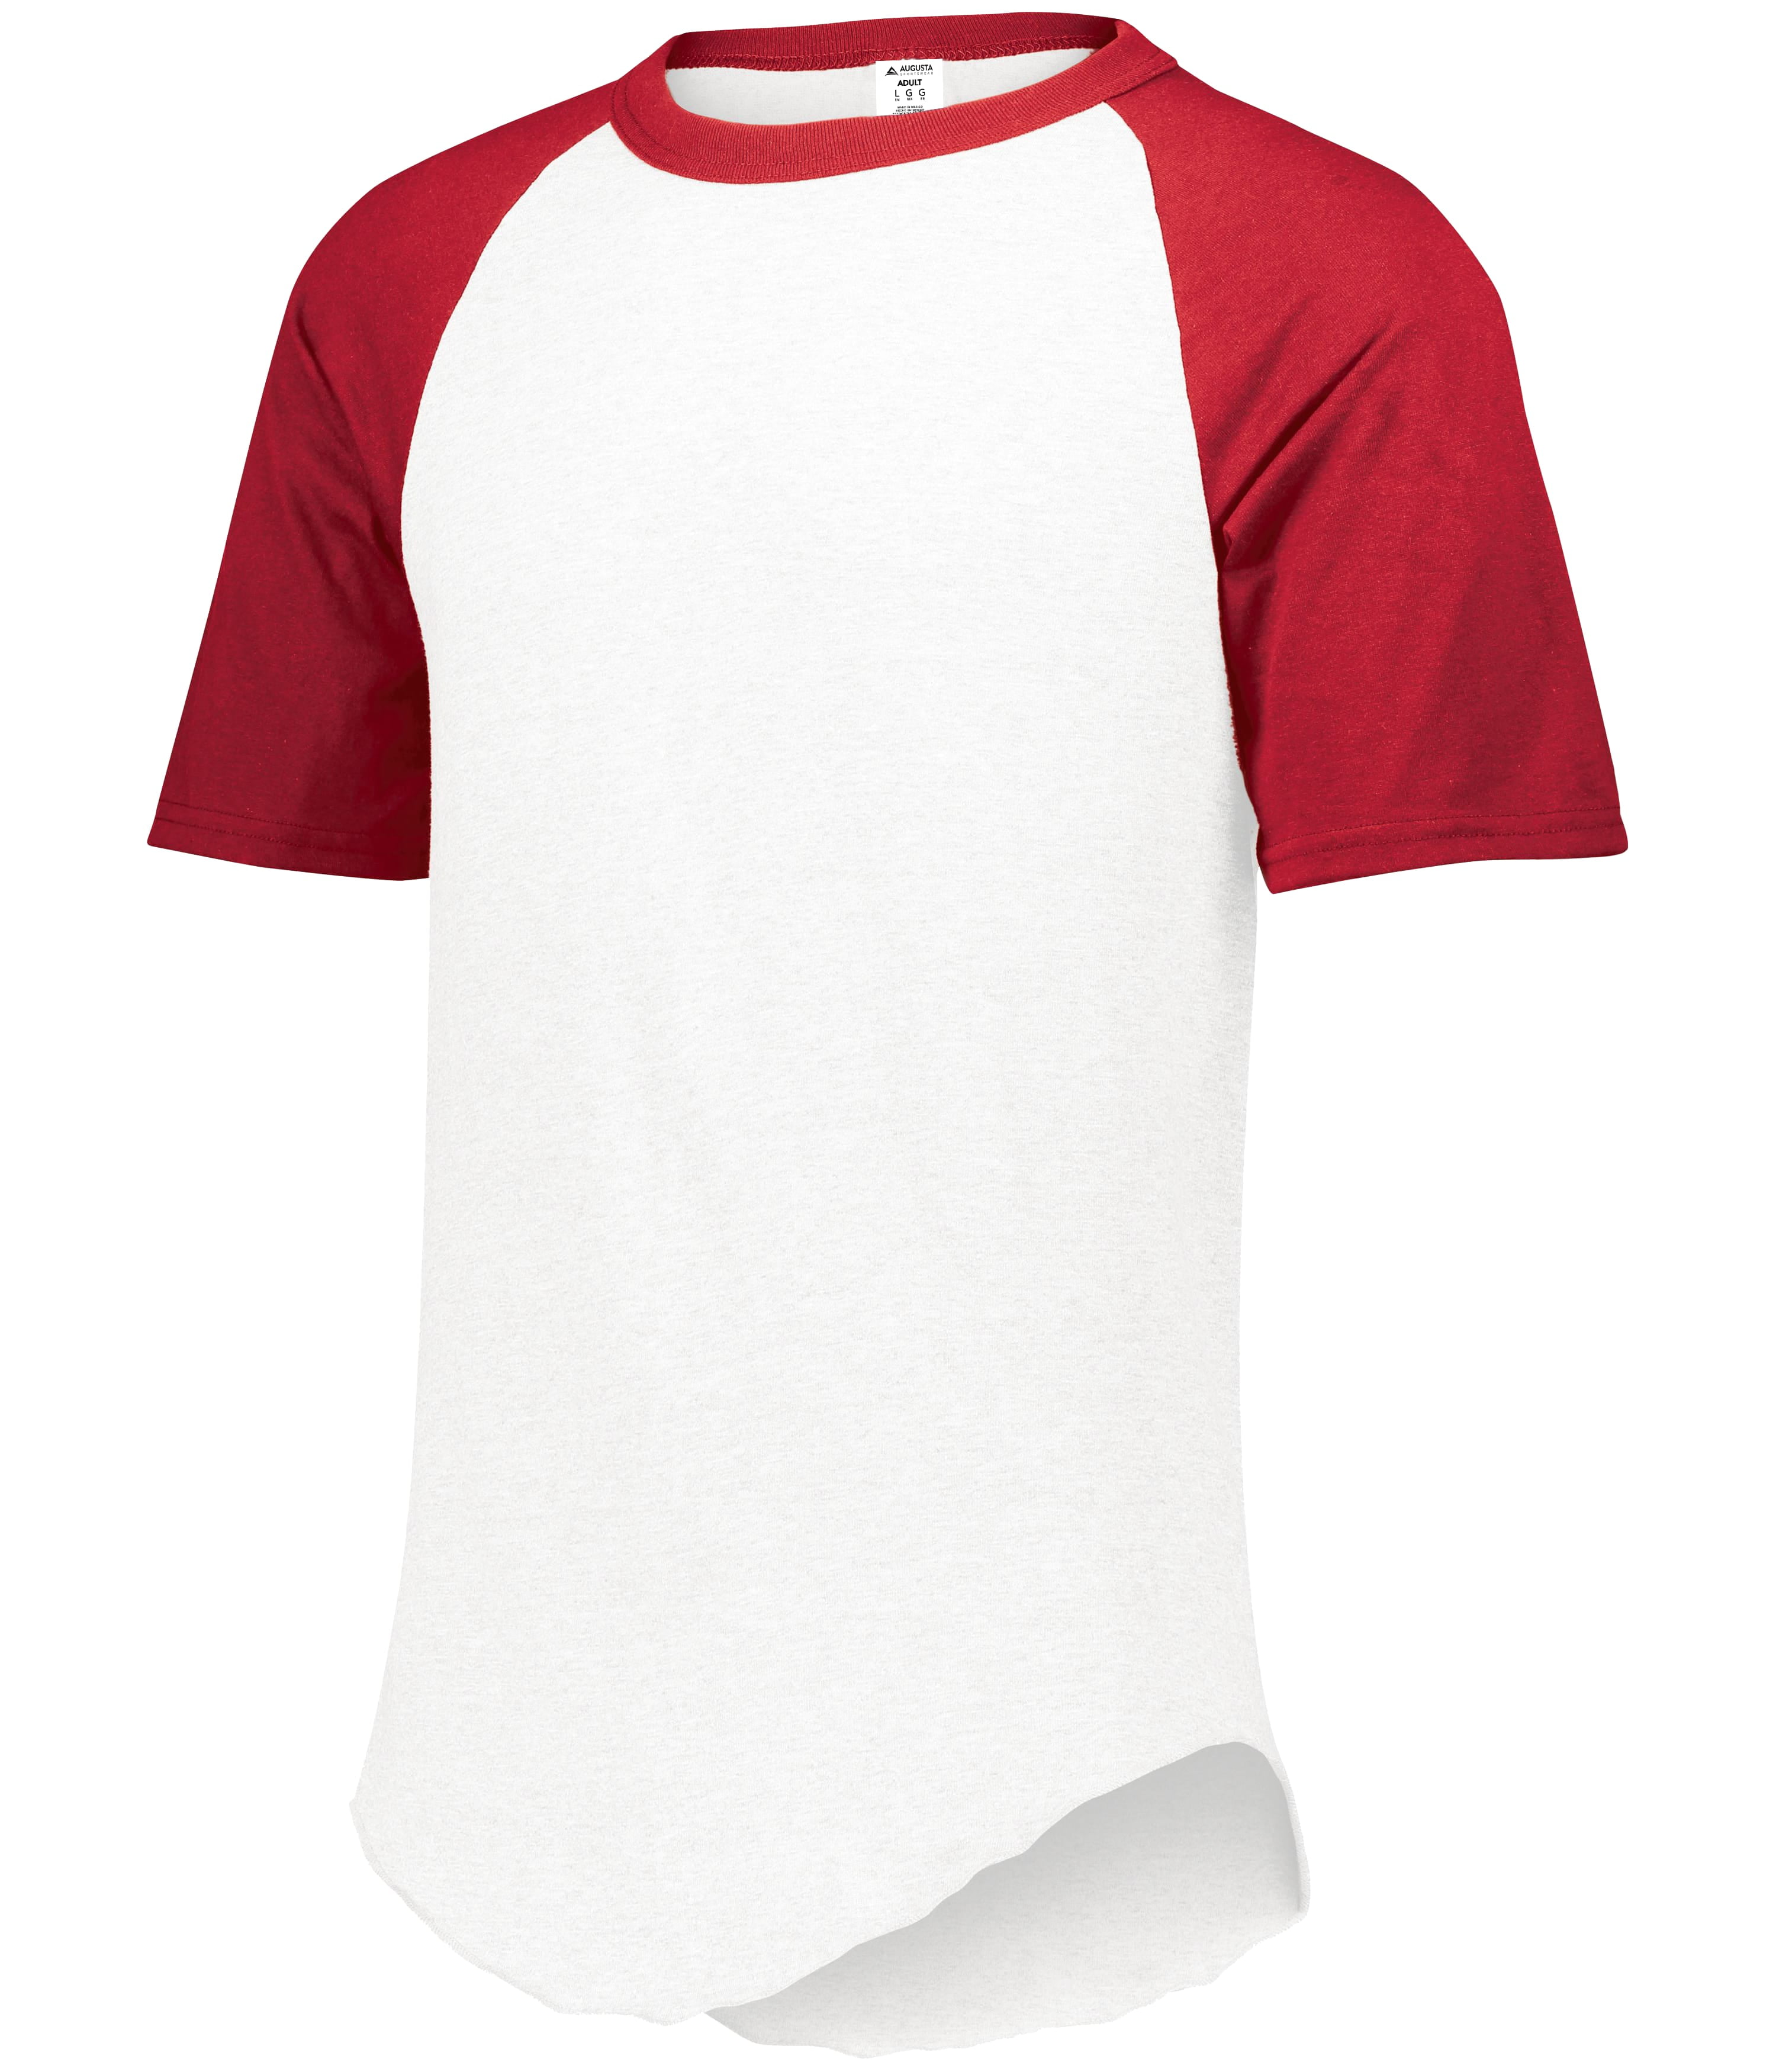 Augusta Sportswear 423 - Short Sleeve Baseball Jersey, White/Maroon, L